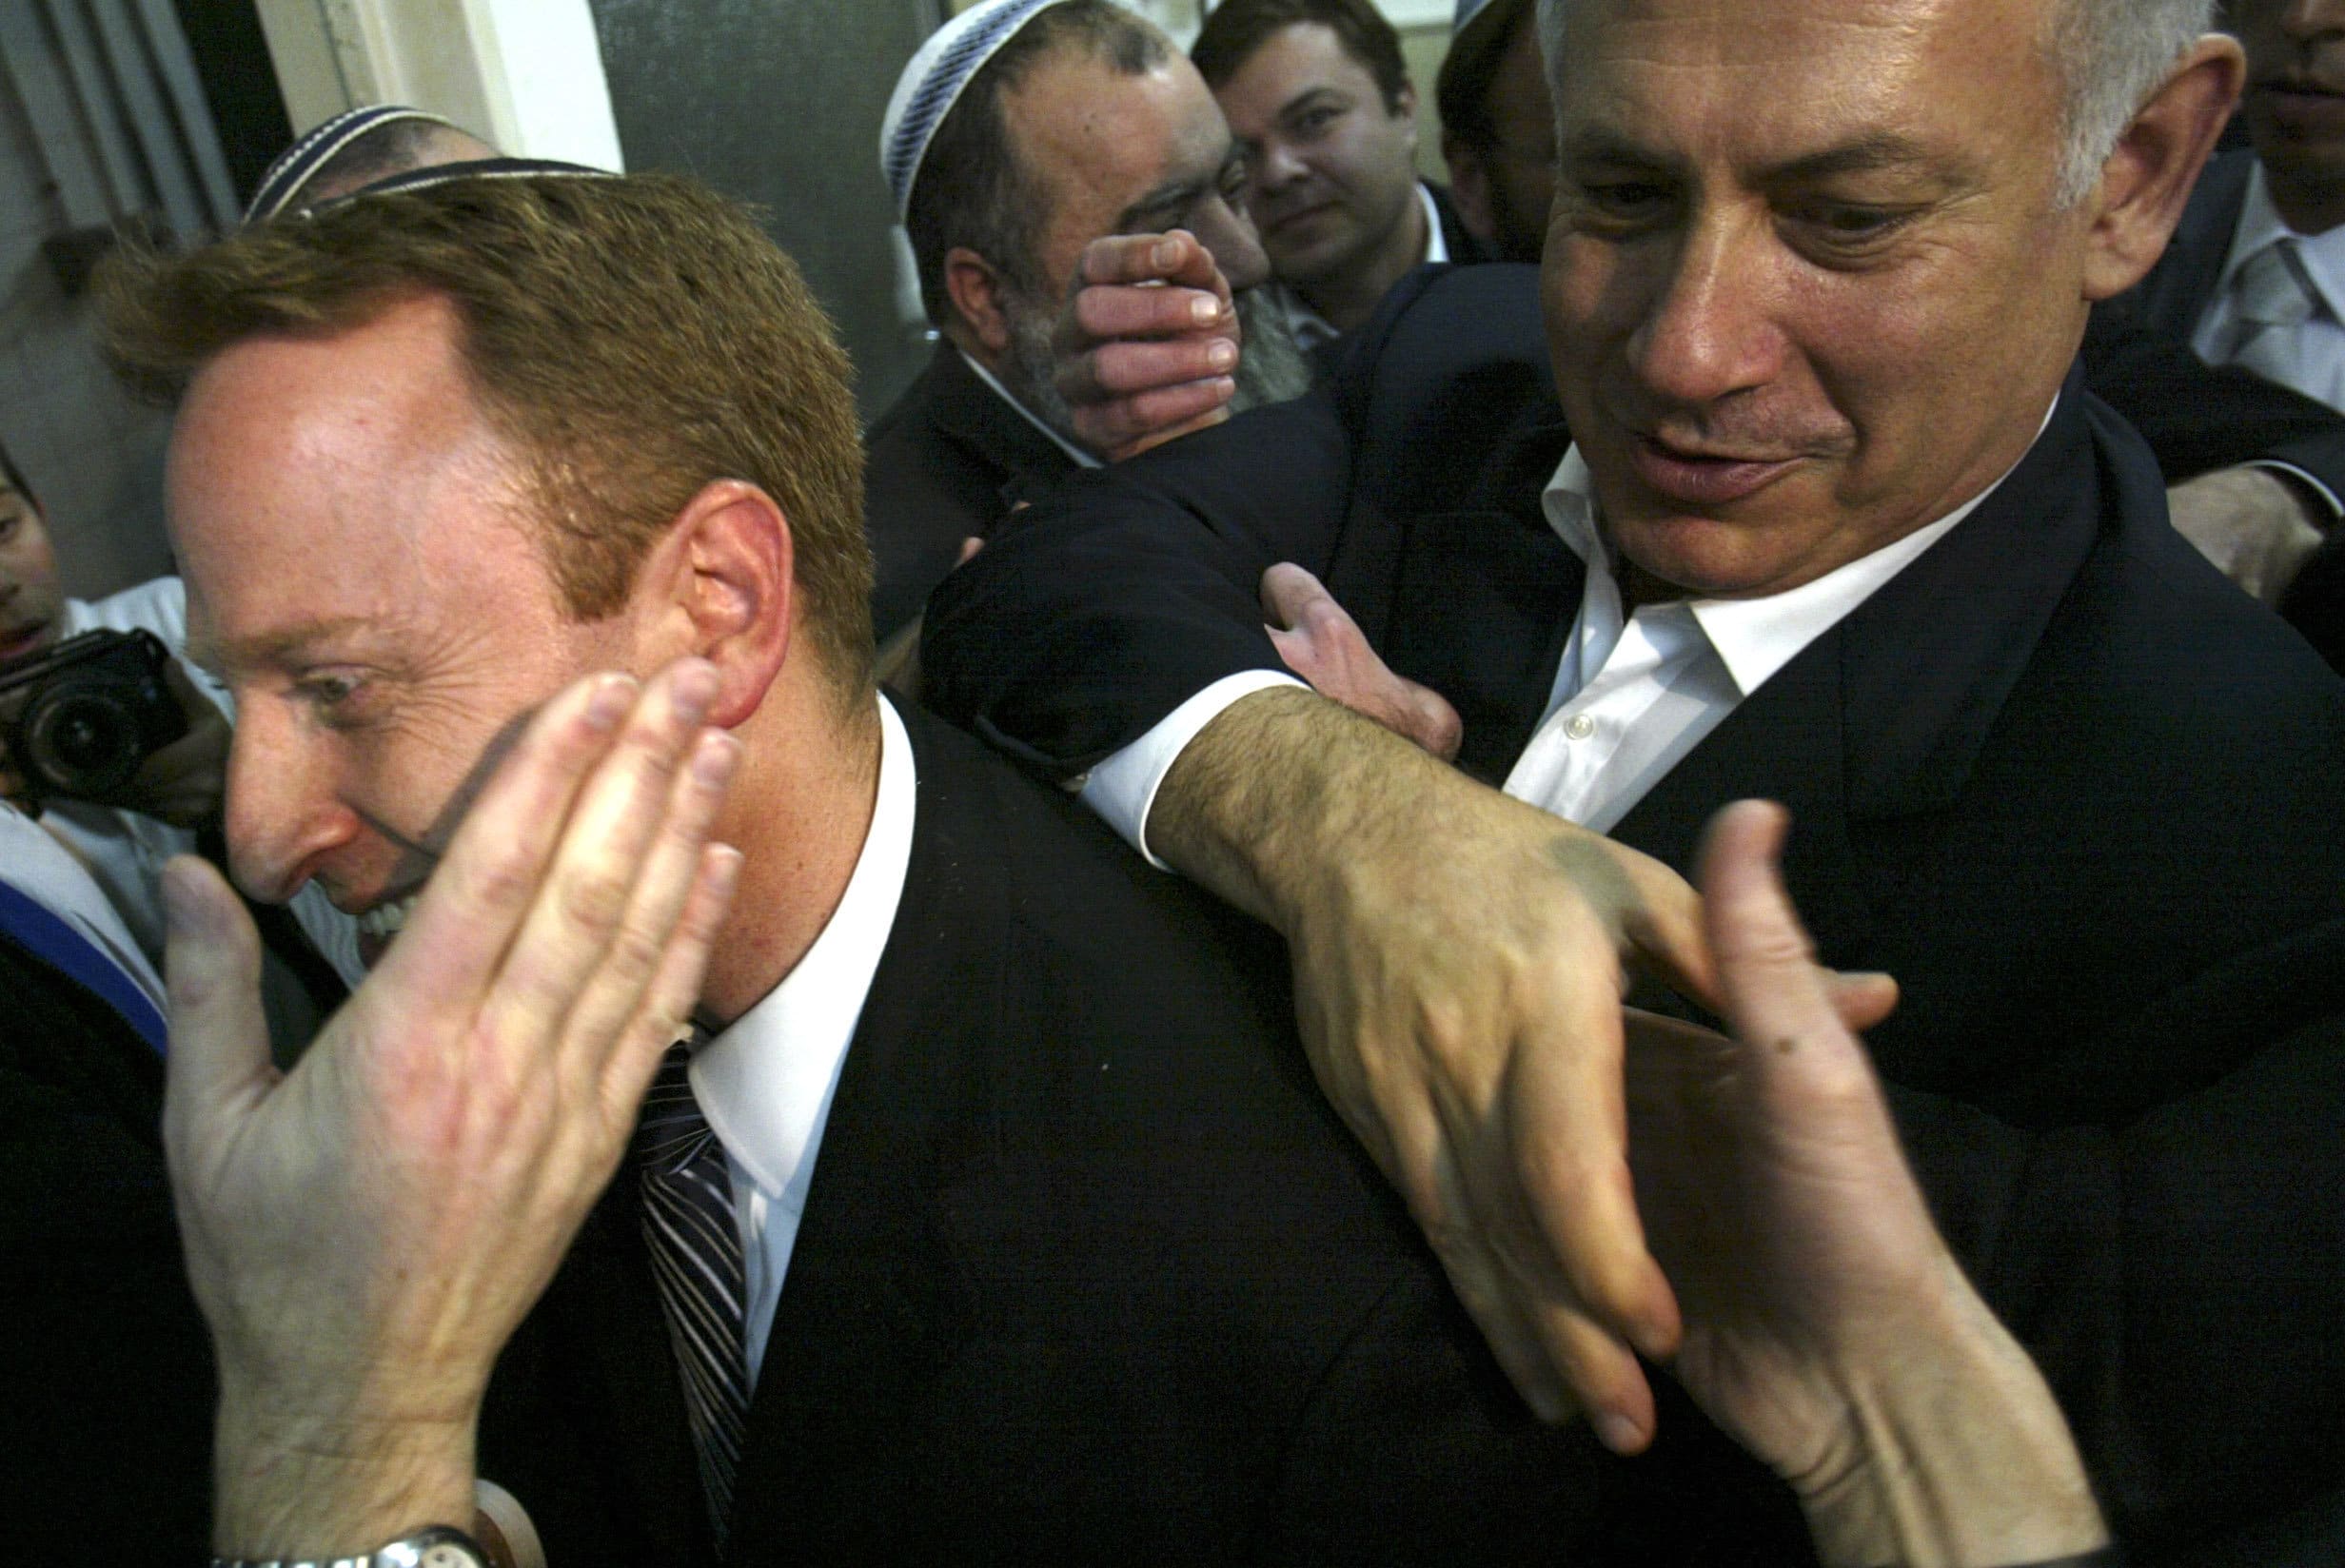 בנימין נתניהו עם ארי הרו ב-2009, שבועיים לאחר הניצחון בבחירות שהחזיר את נתניהו והליכוד לשלטון (צילום: קובי גדעון)